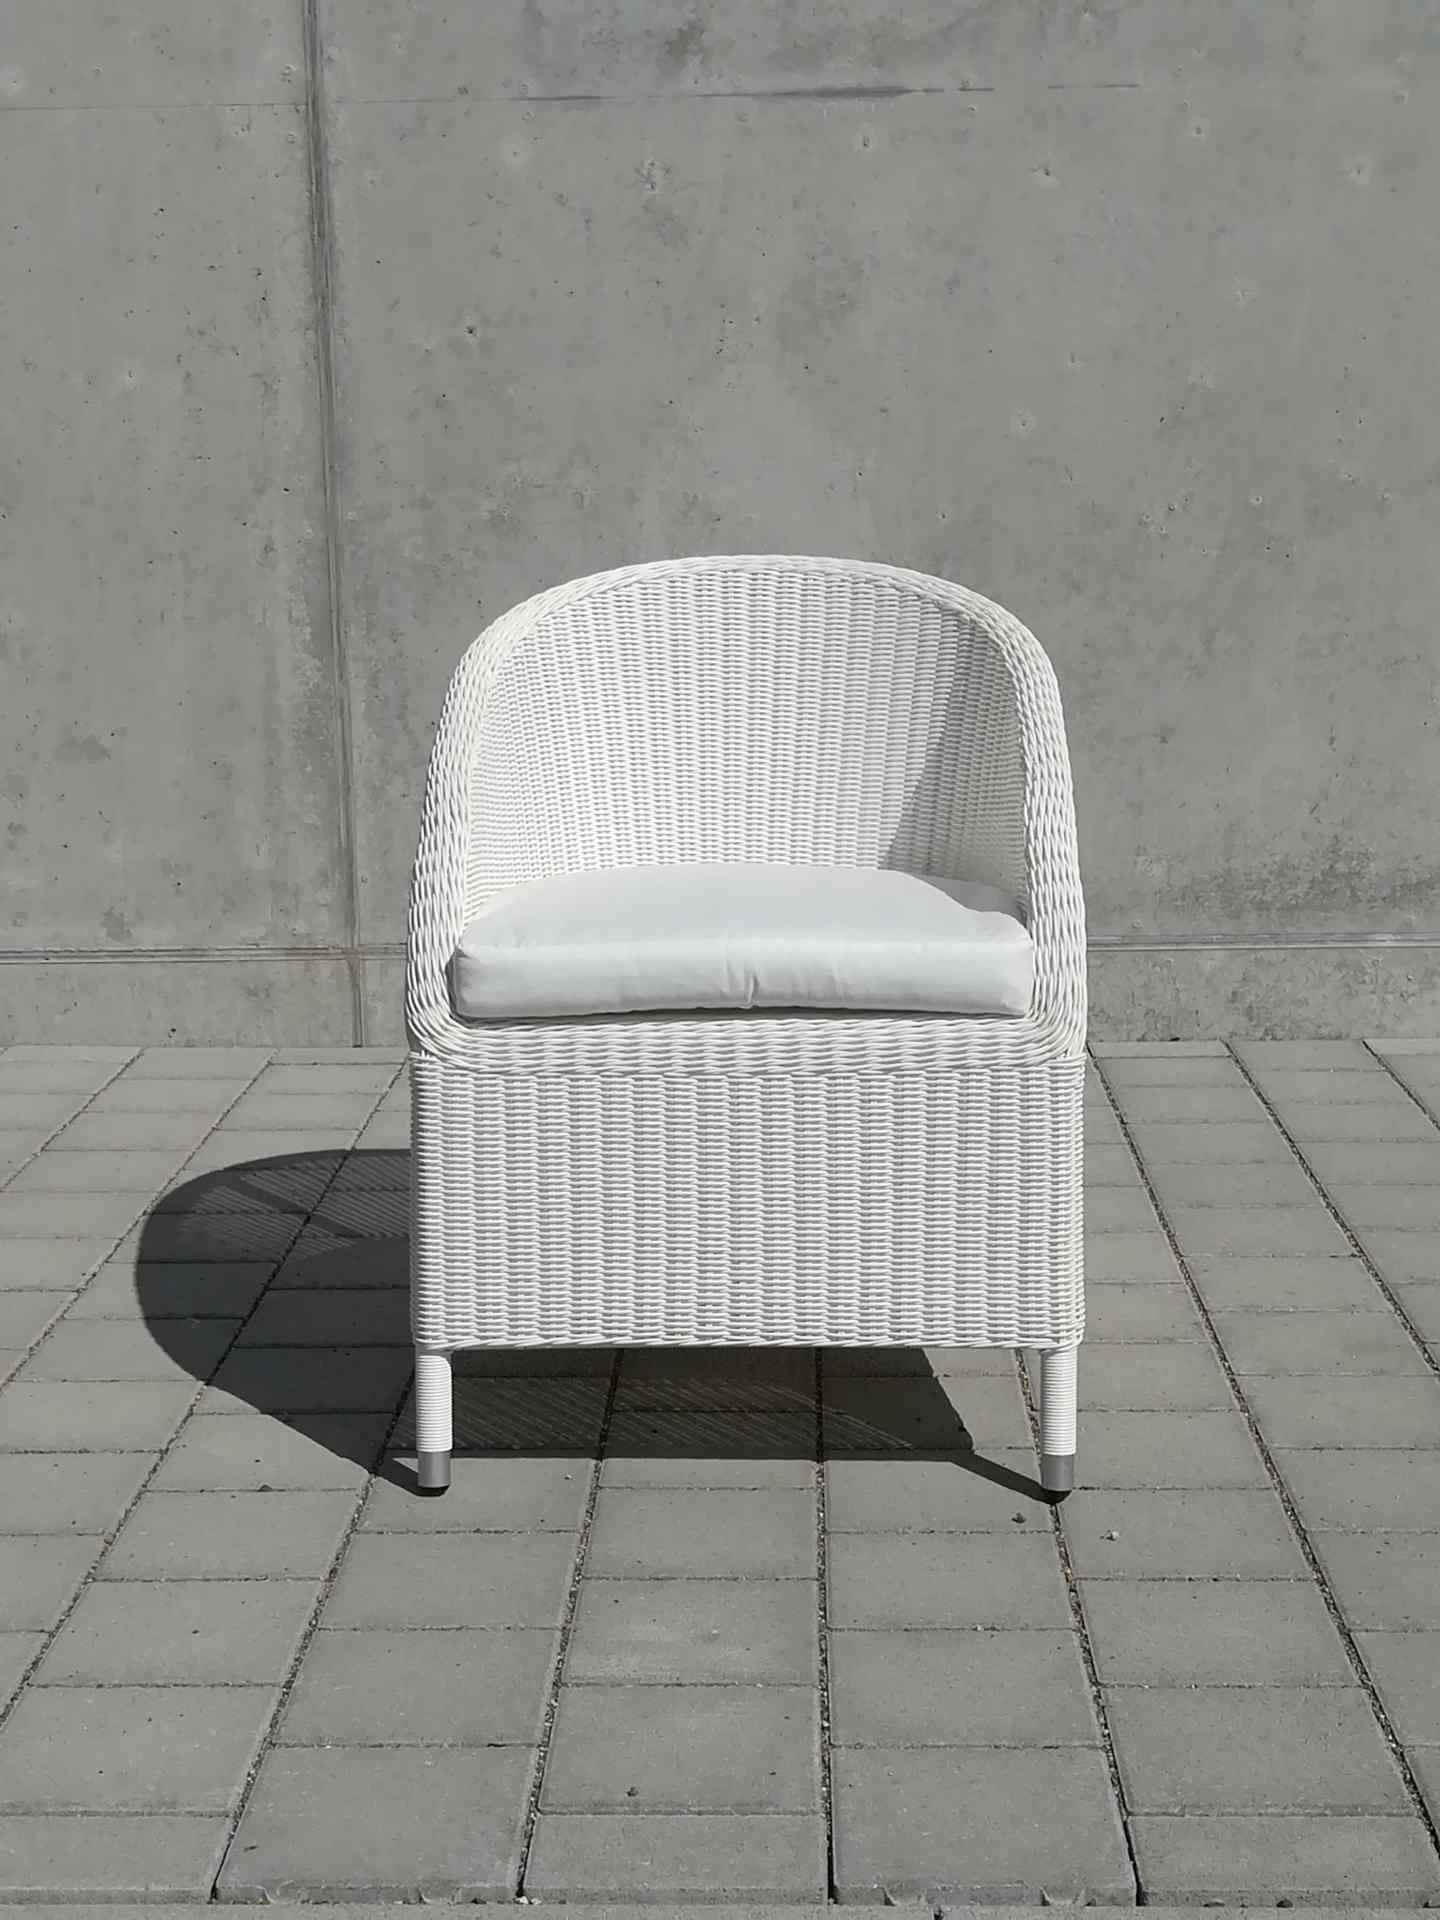 Der klassische Gartensessel Romantik wurde speziell für denn Outdoor-Bereich gefertigt. Hergestellt wurde dieser von der Marke Jan Kurtz. Die Farbe des Sessels ist Weiß.